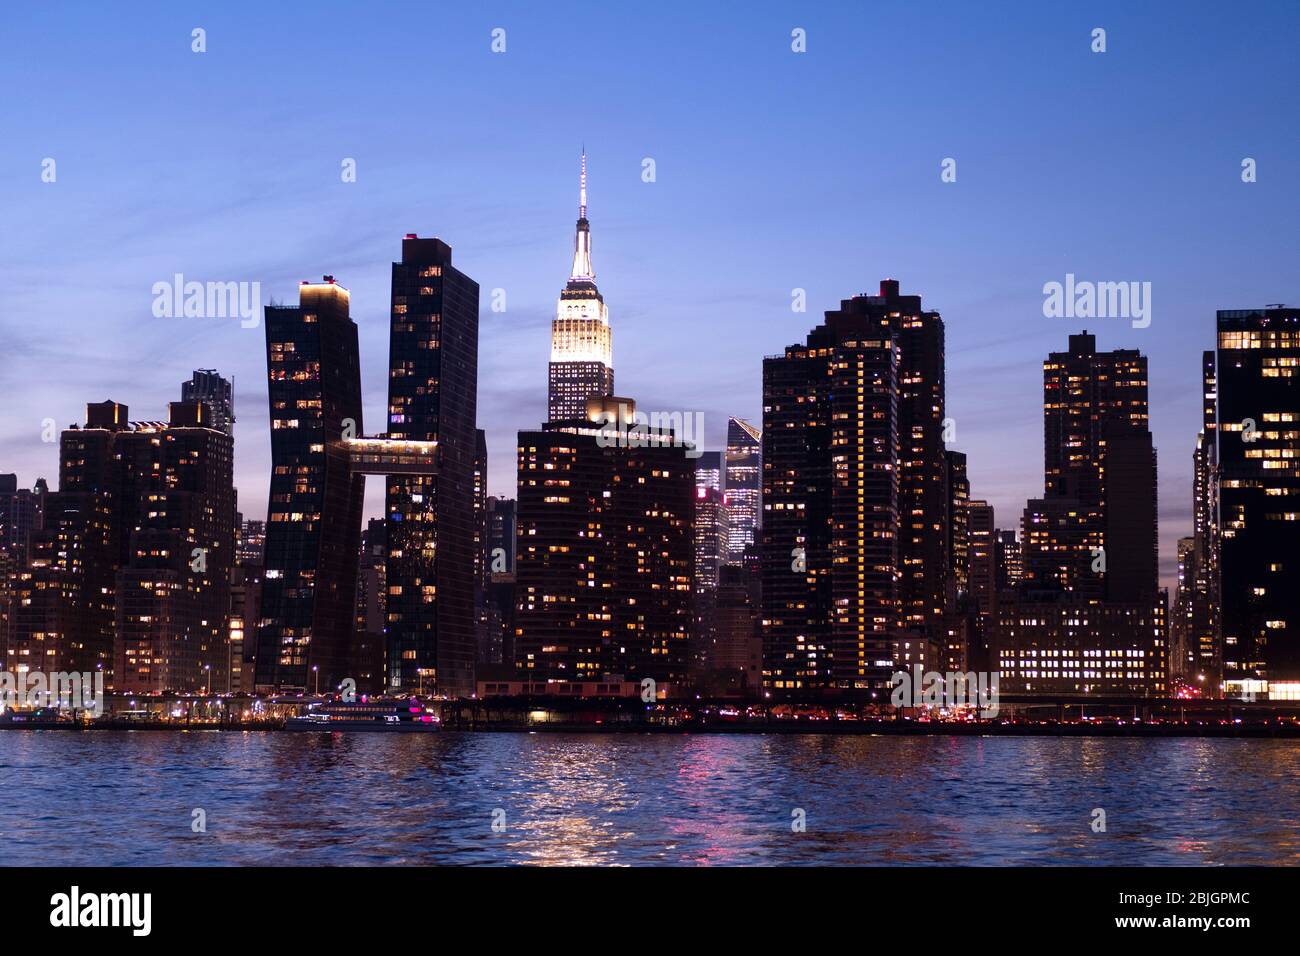 Vista mozzafiato dello skyline di Manhattan con l'imponente Empire state Building visto dall'East River a New York City Foto Stock